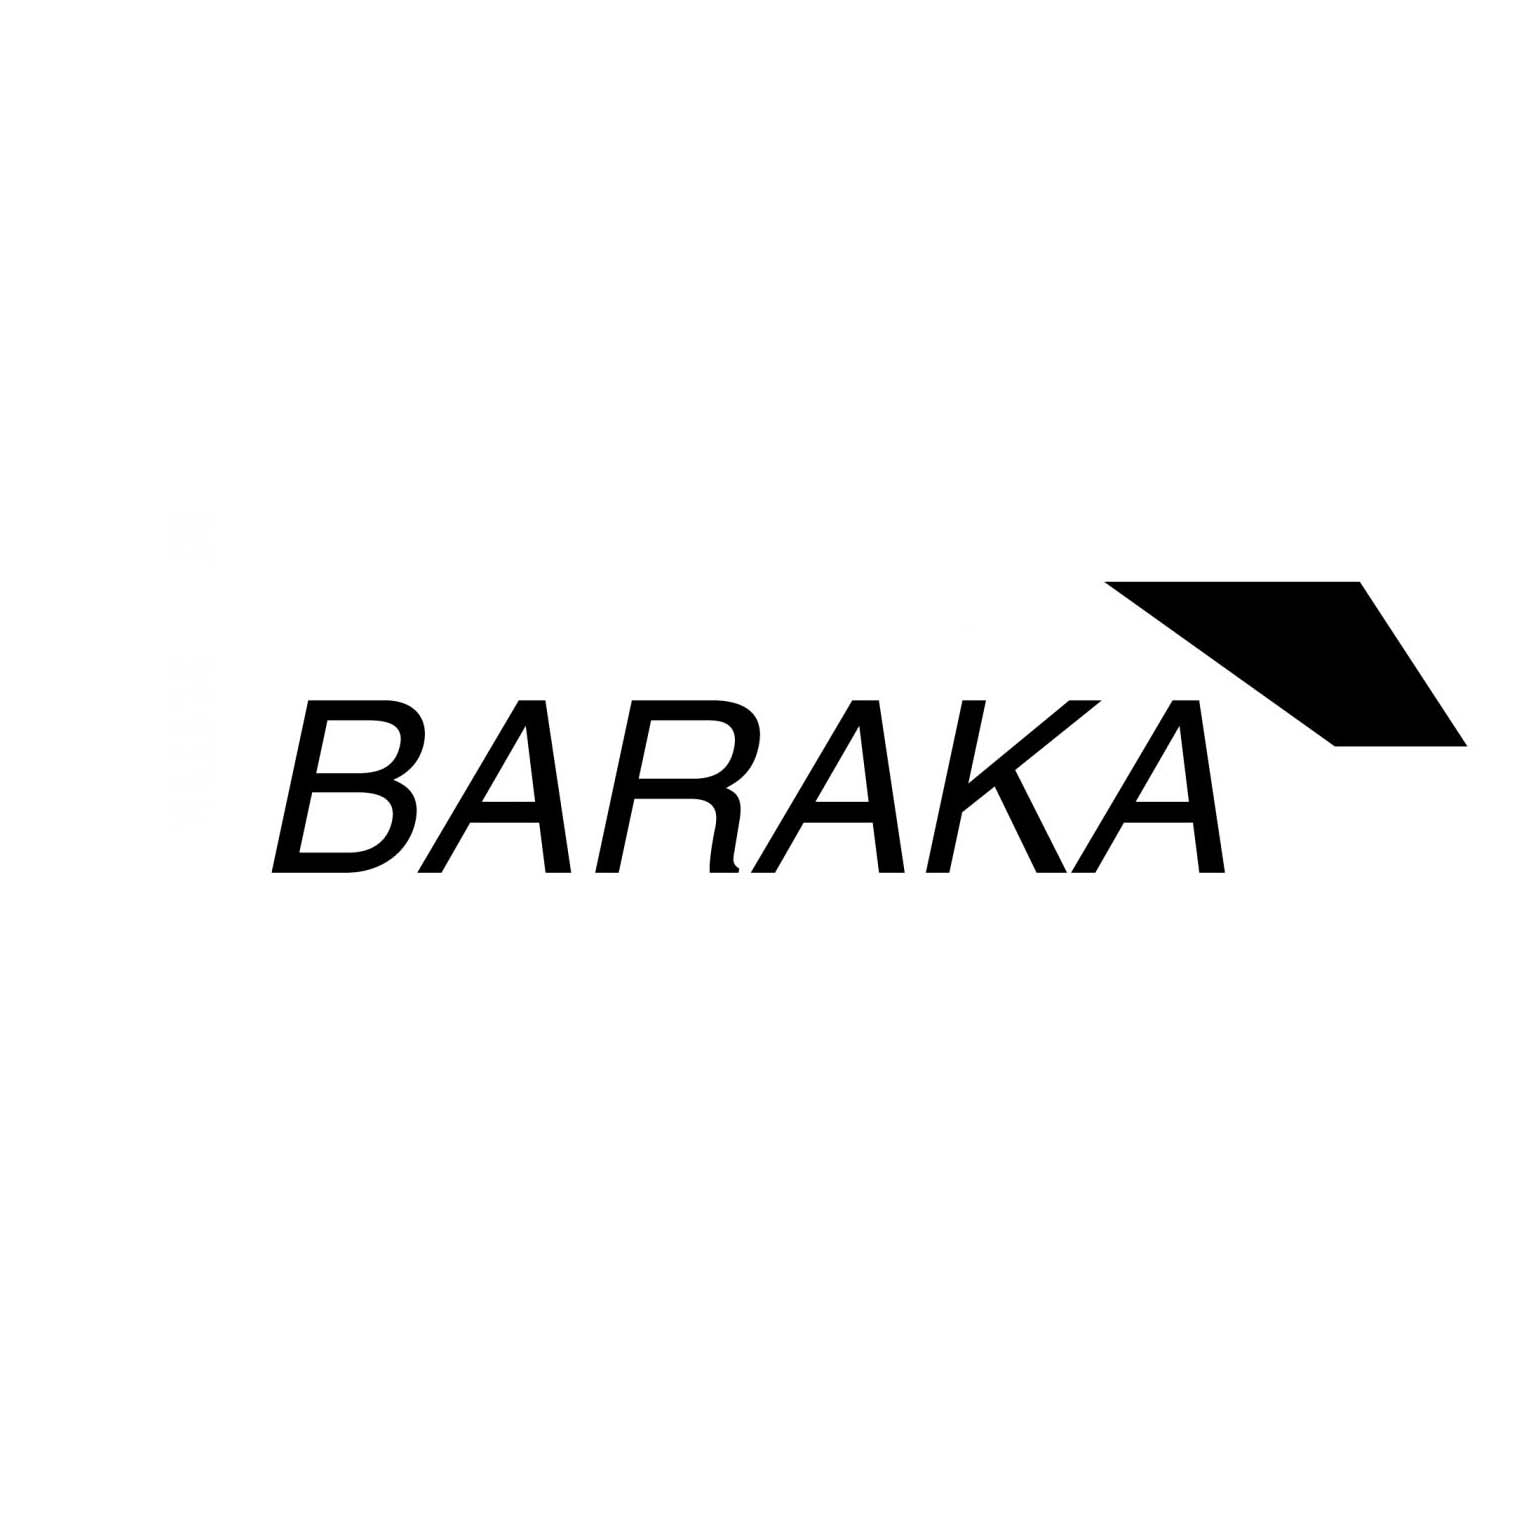 Baraka Image